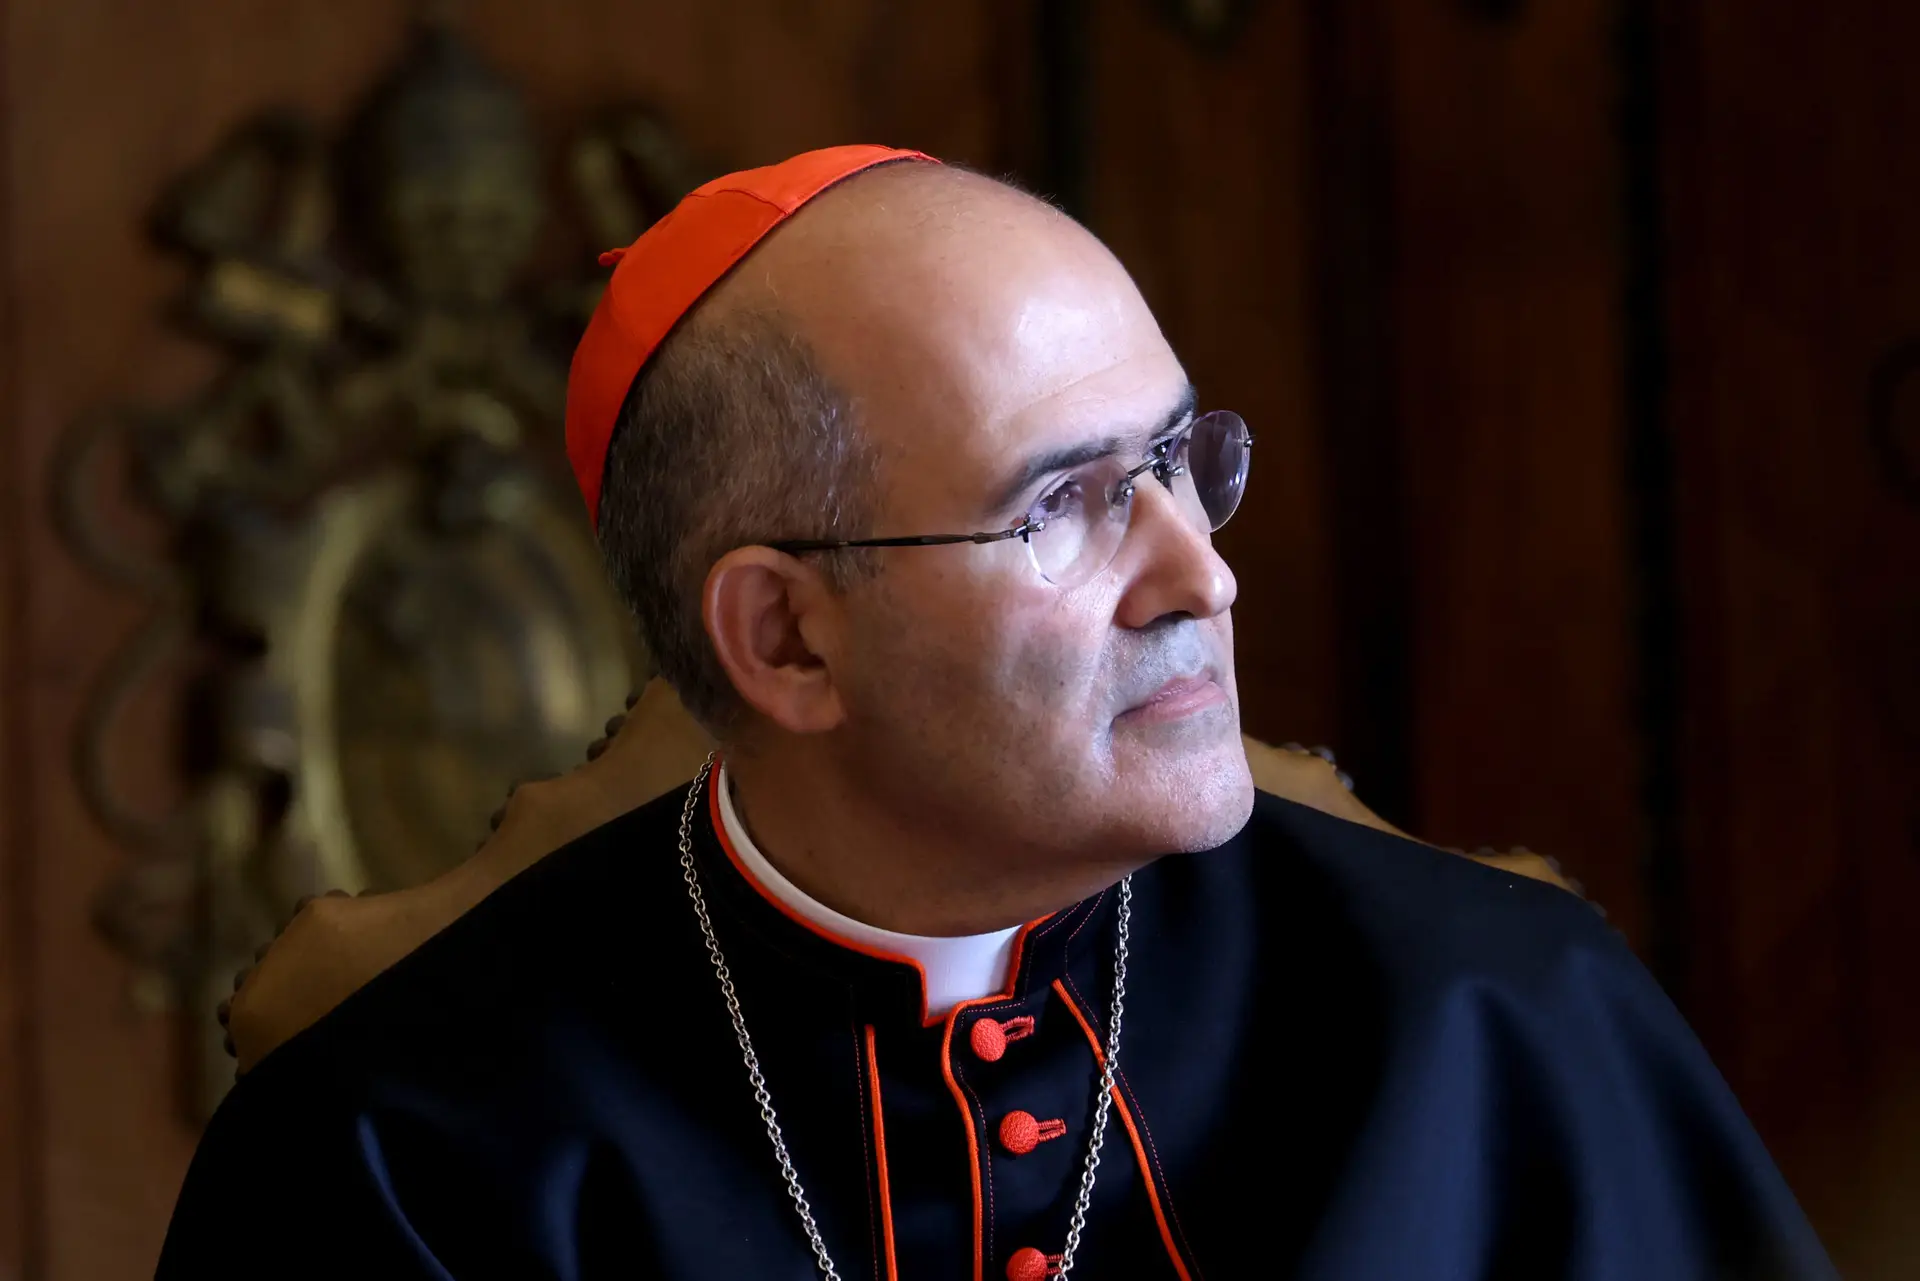 Cardeal Tolentino Mendonça alerta para “insuportáveis sofrimentos causados pela guerra”